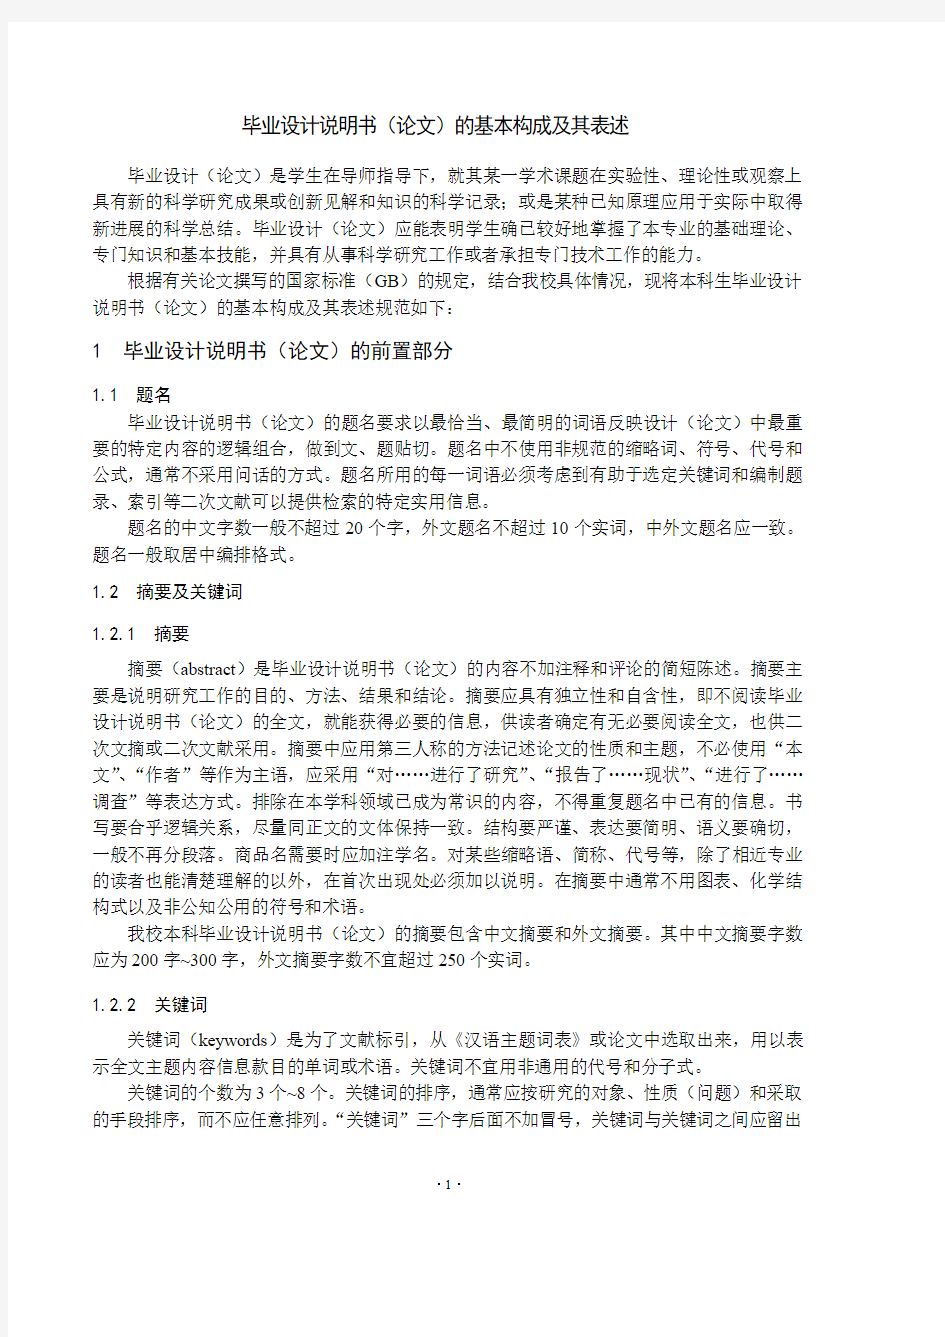 毕业设计说明书(论文)的基本构成及其表述-Nanjing